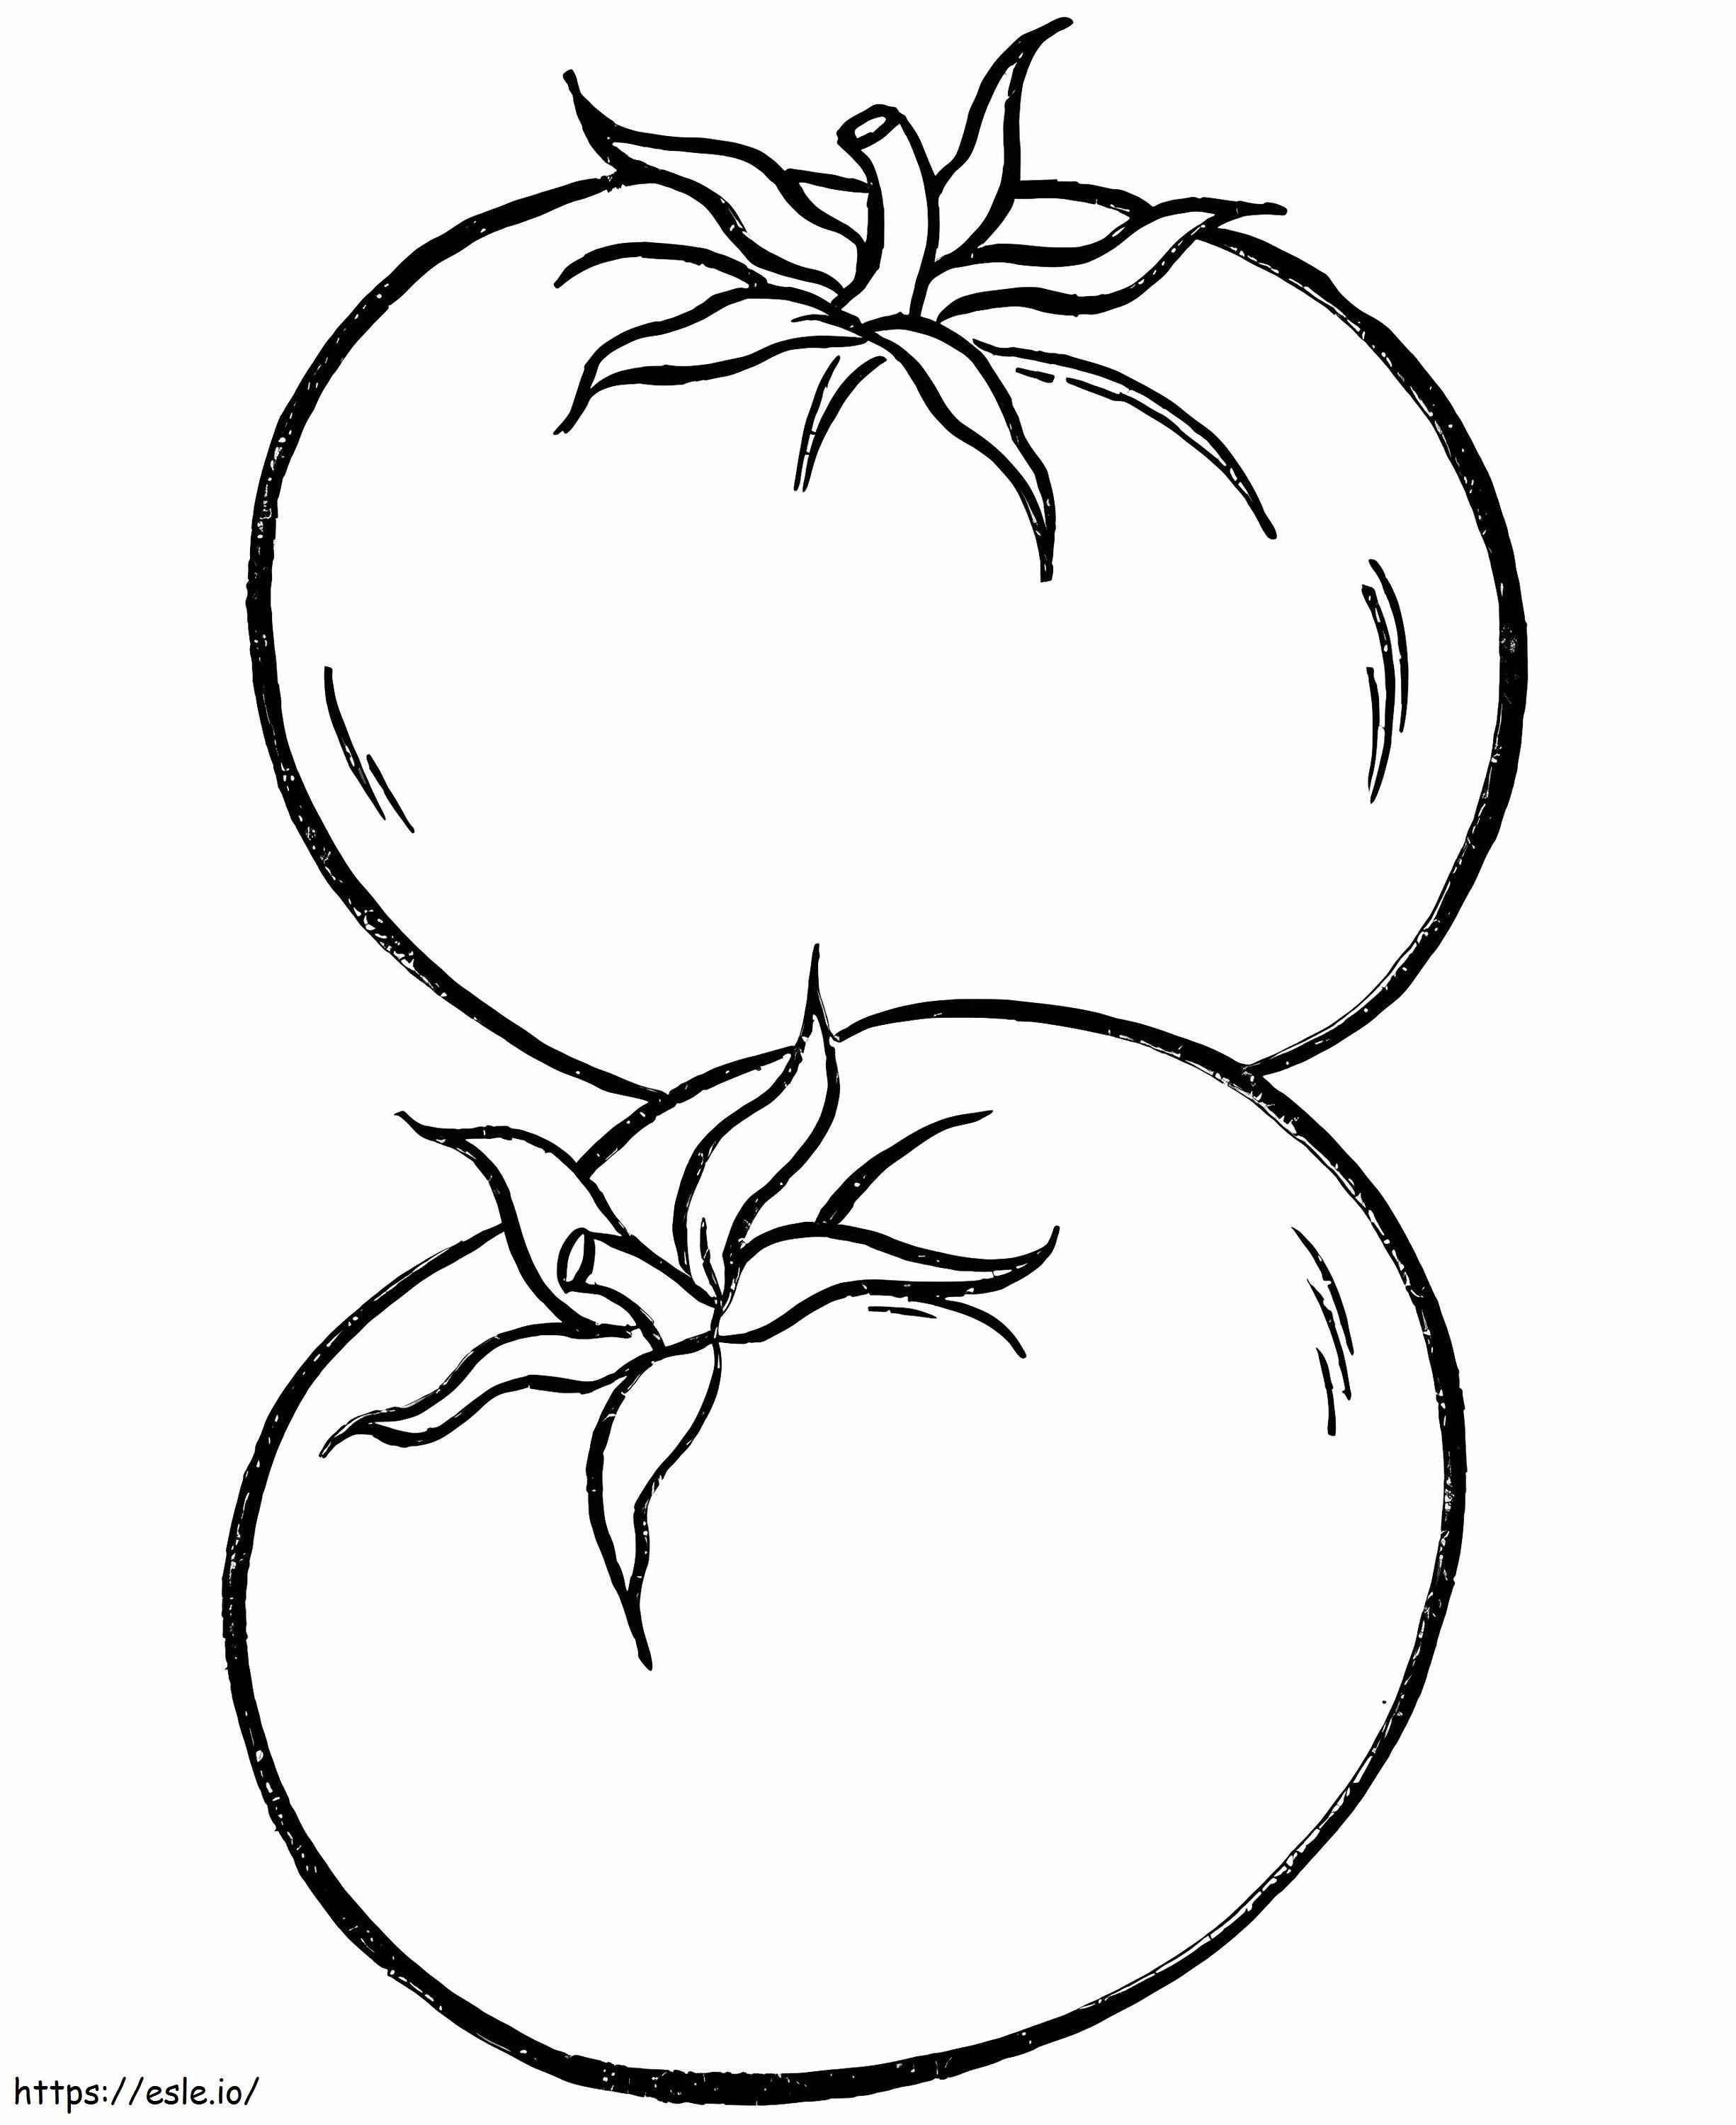 Zwei Tomaten ausmalbilder